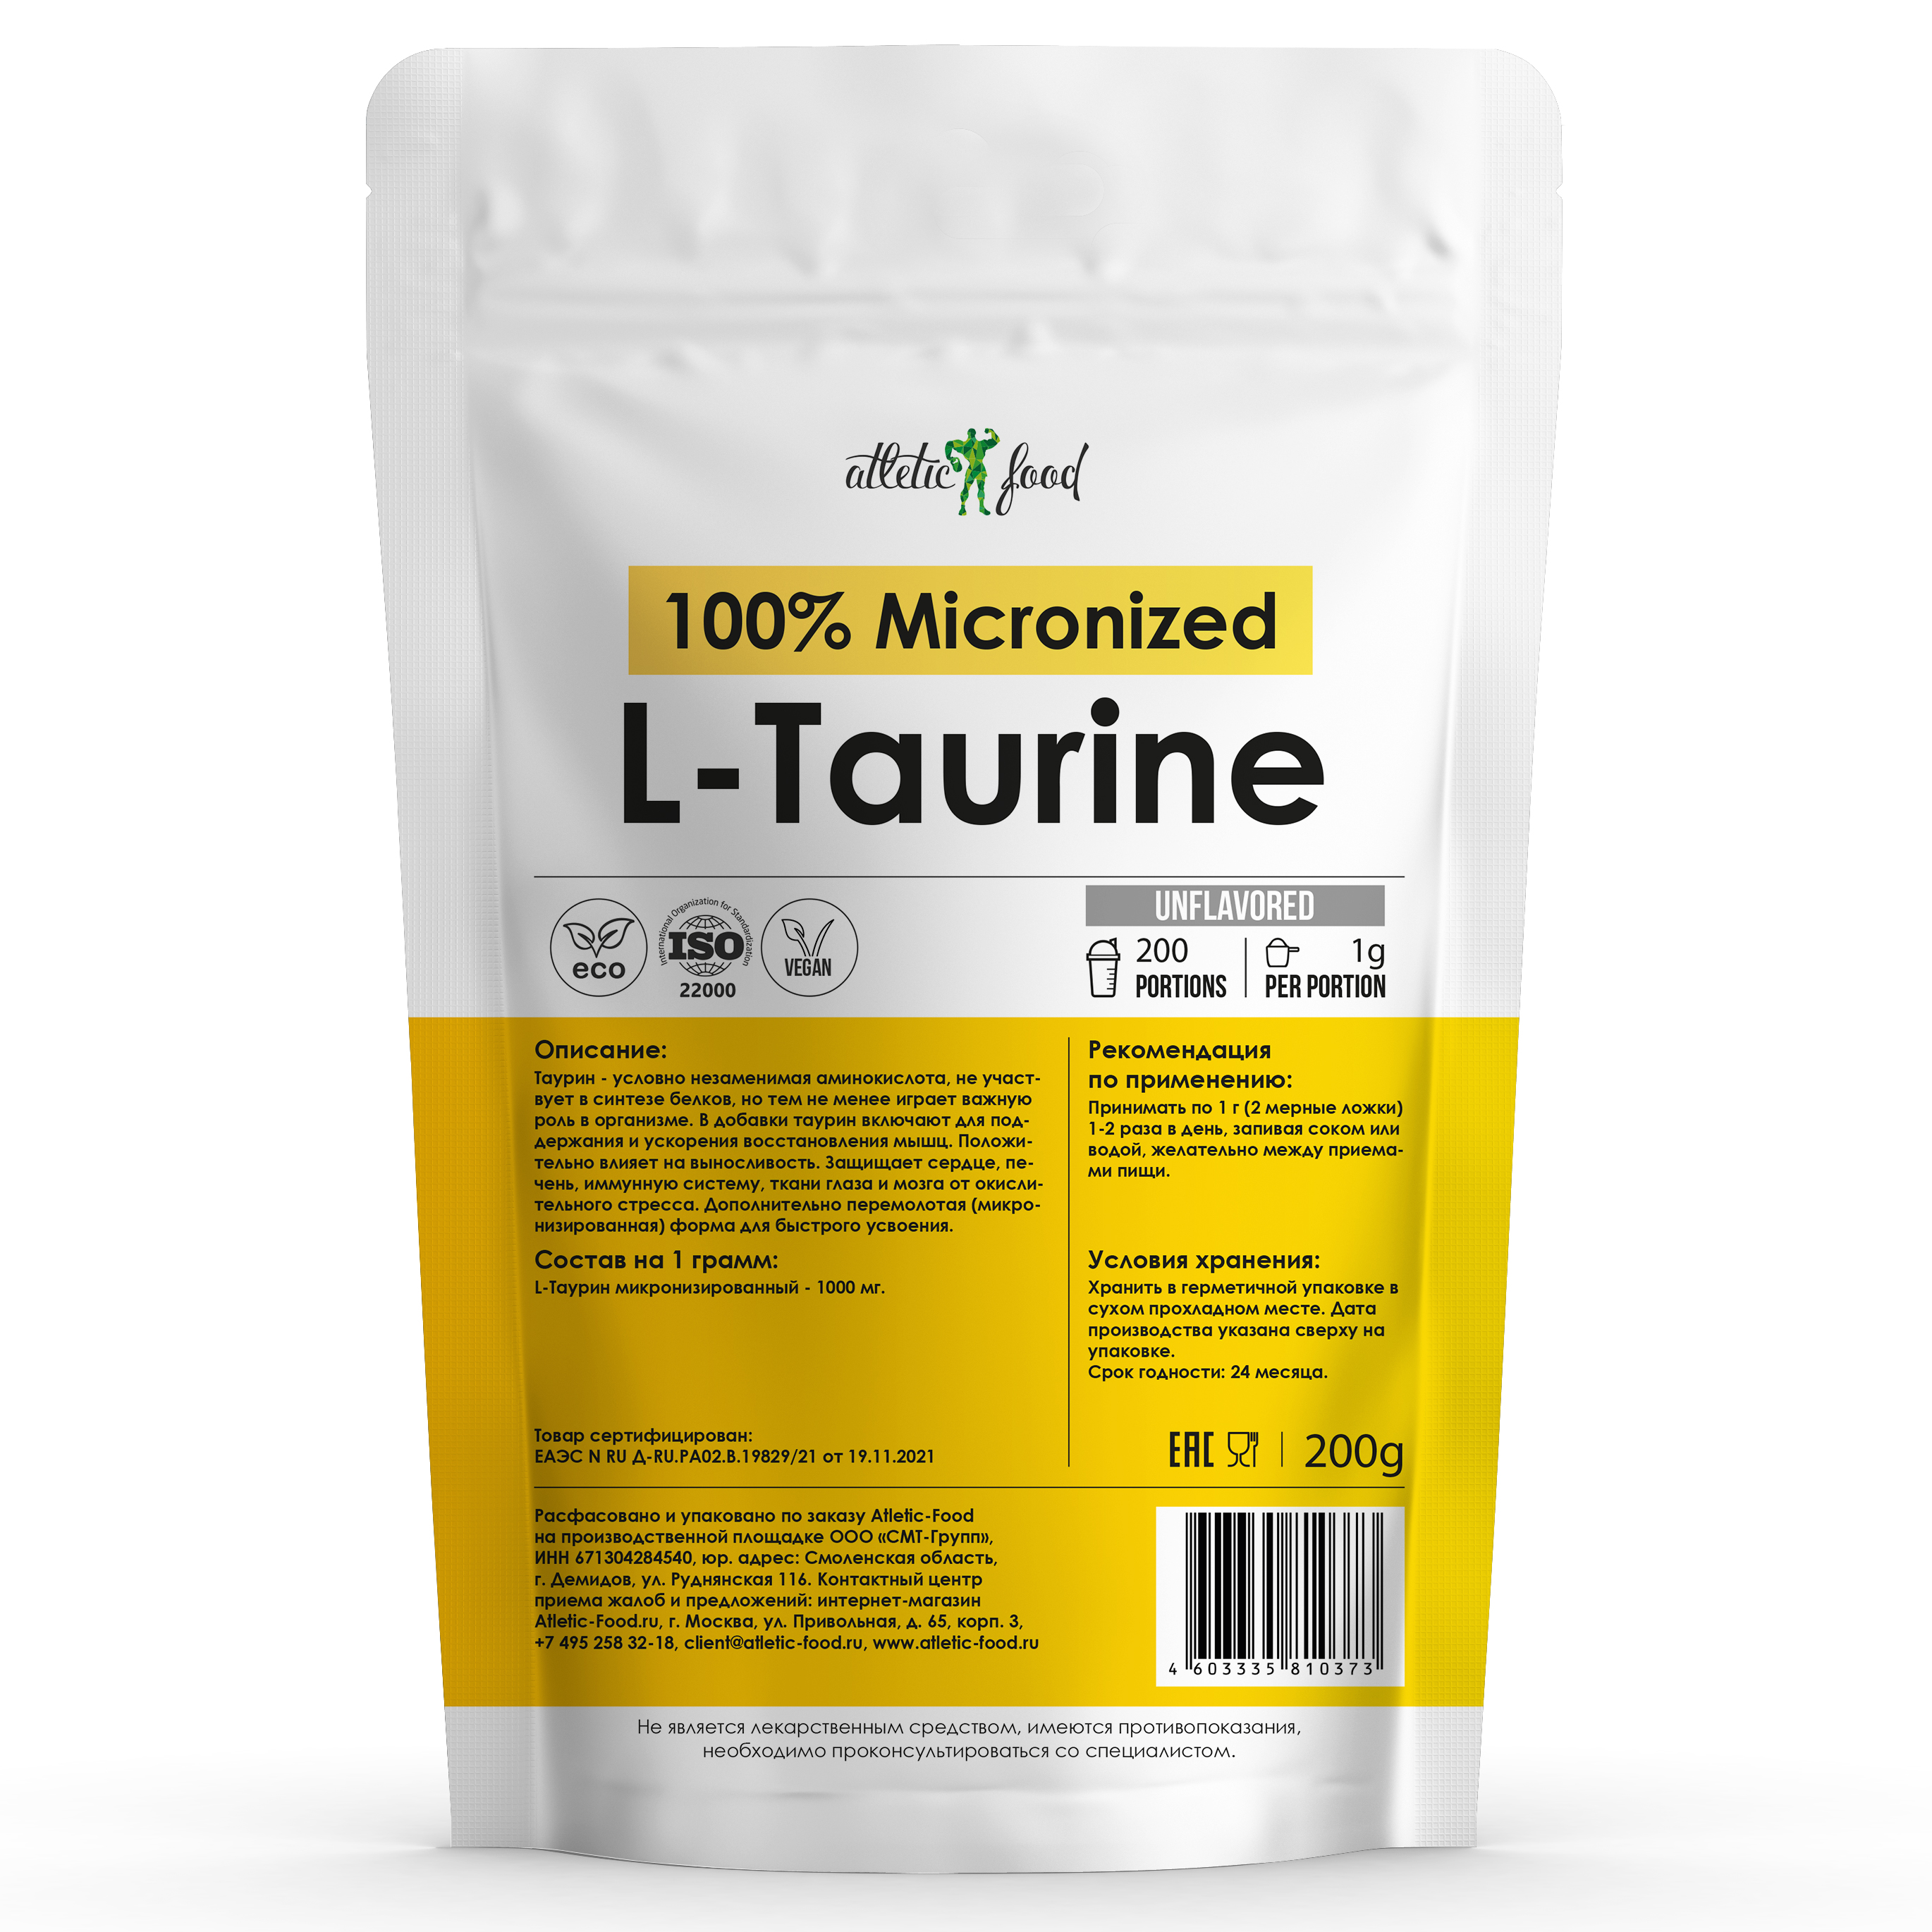 Л-Таурин микронизированный Atletic Food 100% Micronized L-Taurine 1000 mg 200 грамм